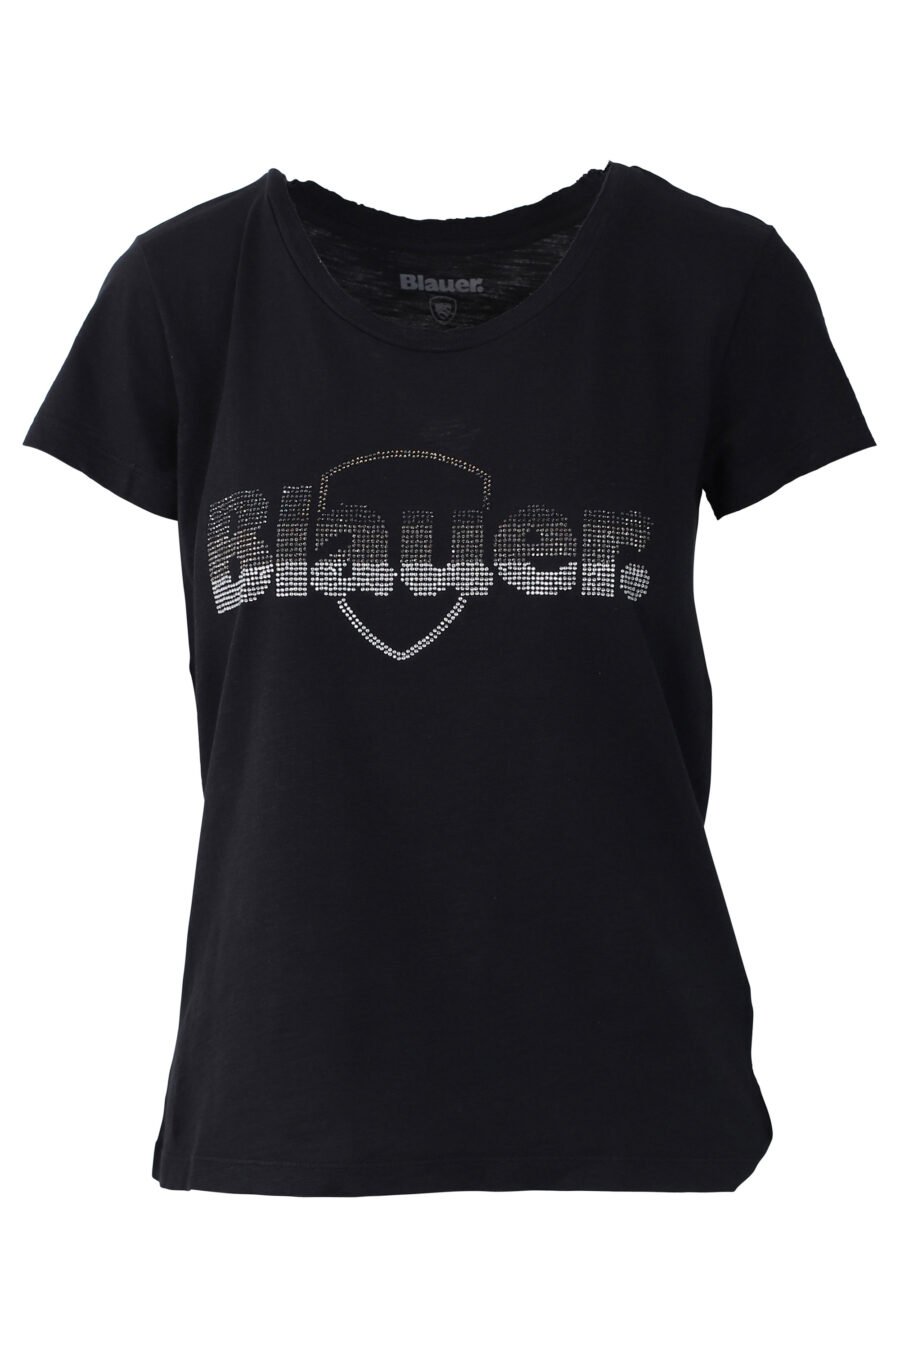 T-shirt preta com maxilogo bordado com strass - IMG 0660